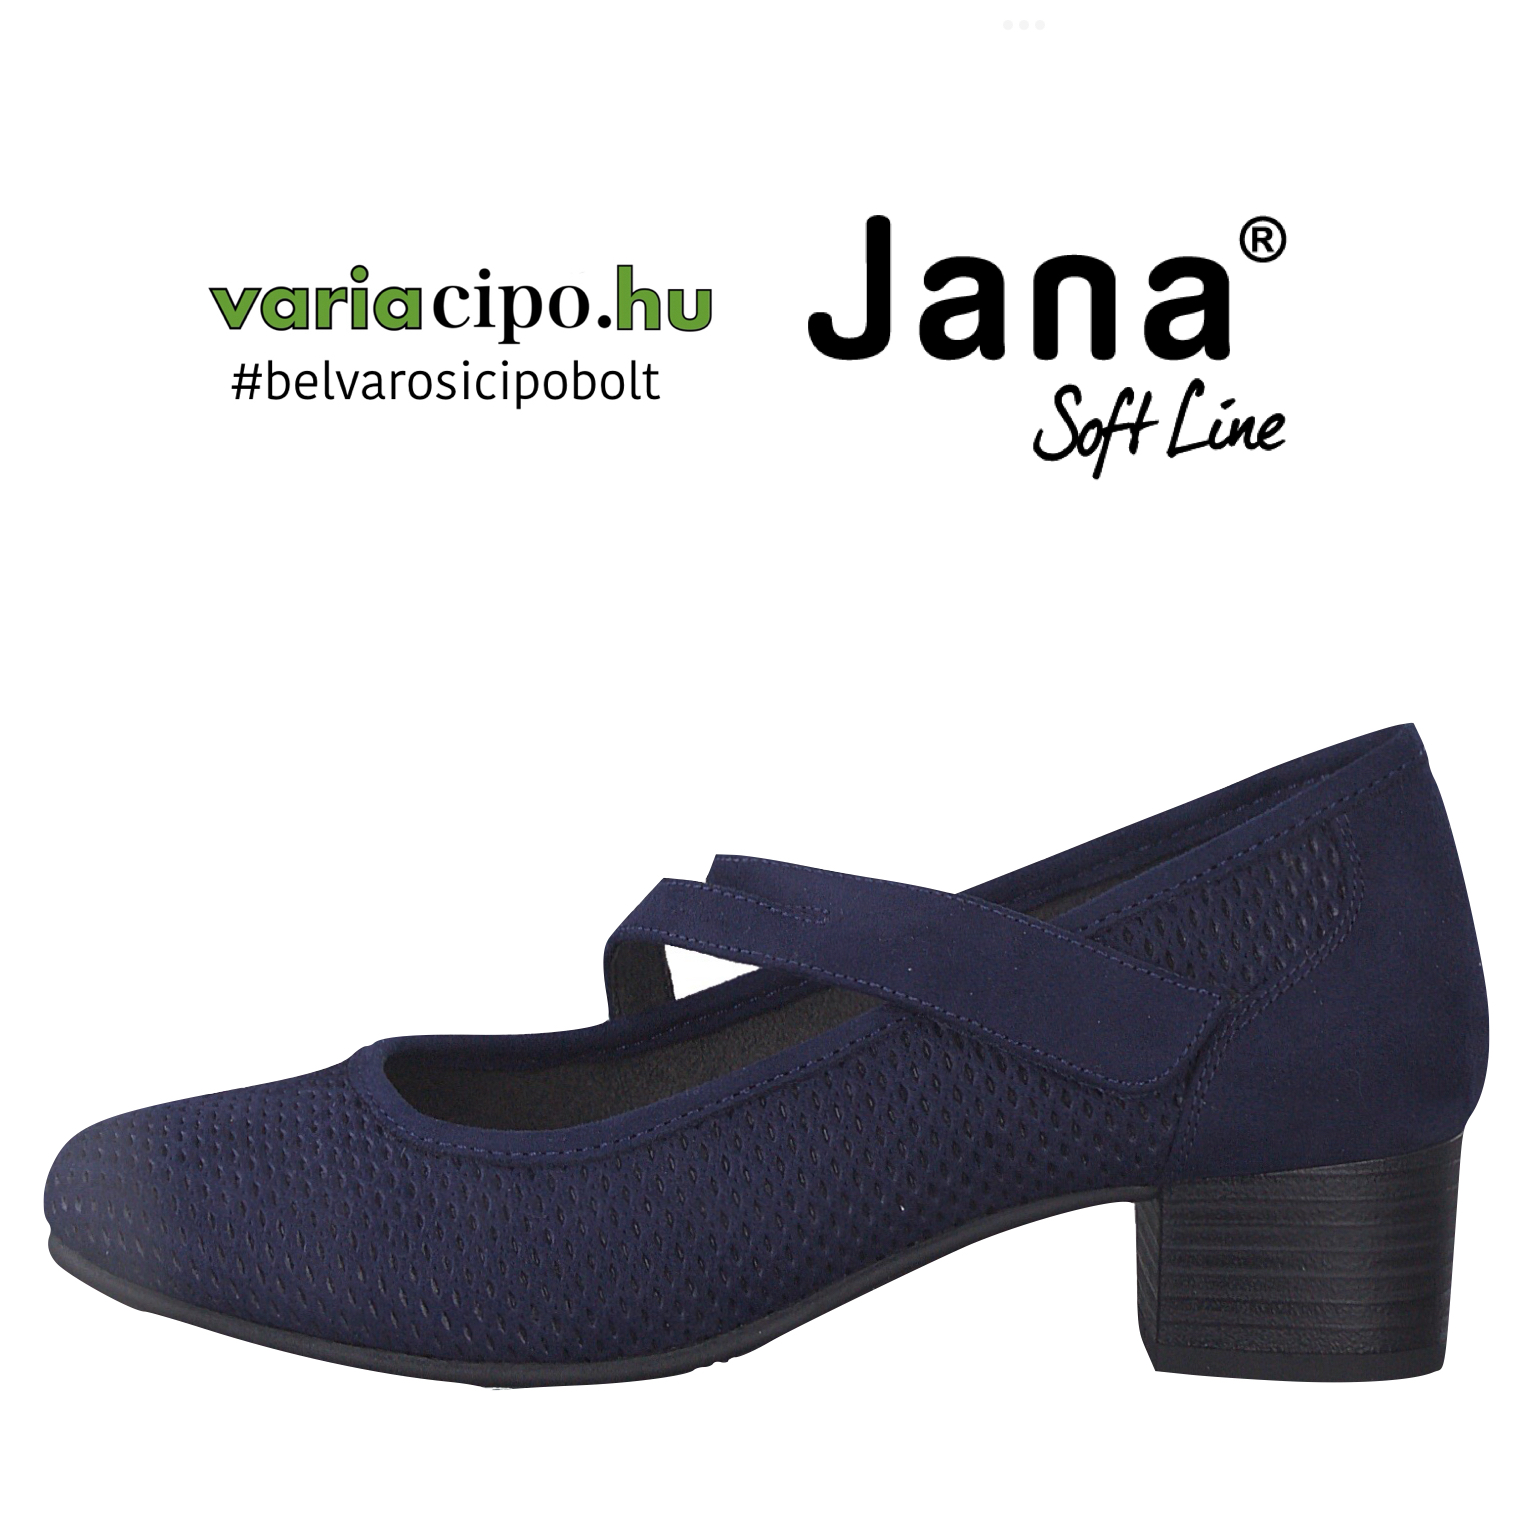 Jana sötétkék pántos félcipő 8-24363-20-805-navy